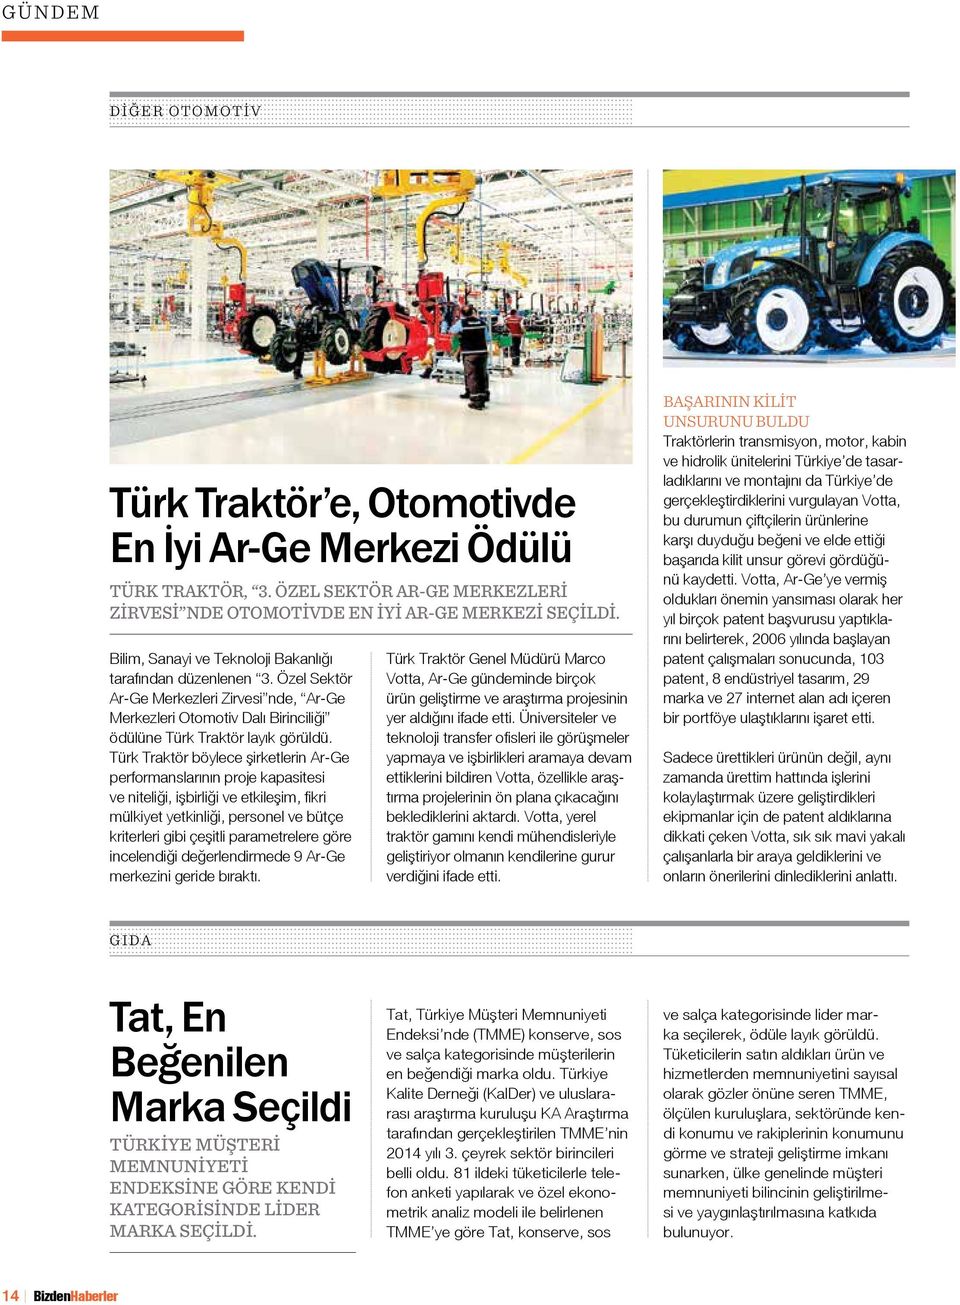 Türk Traktör böylece şirketlerin Ar-Ge performanslarının proje kapasitesi ve niteliği, işbirliği ve etkileşim, fikri mülkiyet yetkinliği, personel ve bütçe kriterleri gibi çeşitli parametrelere göre